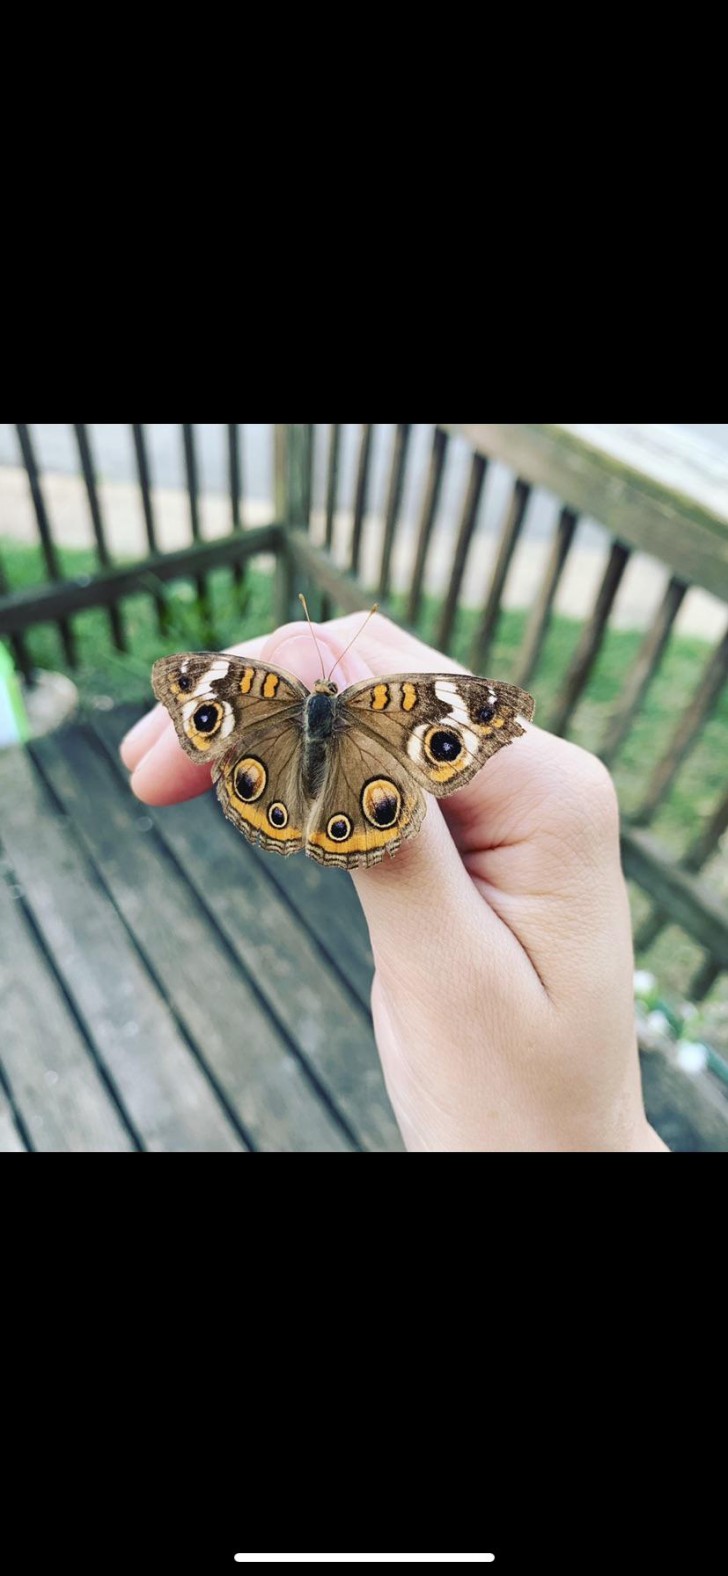 19. Un vero colpo di fortuna che questa meravigliosa farfalla si sia posata proprio sulla mia mano!